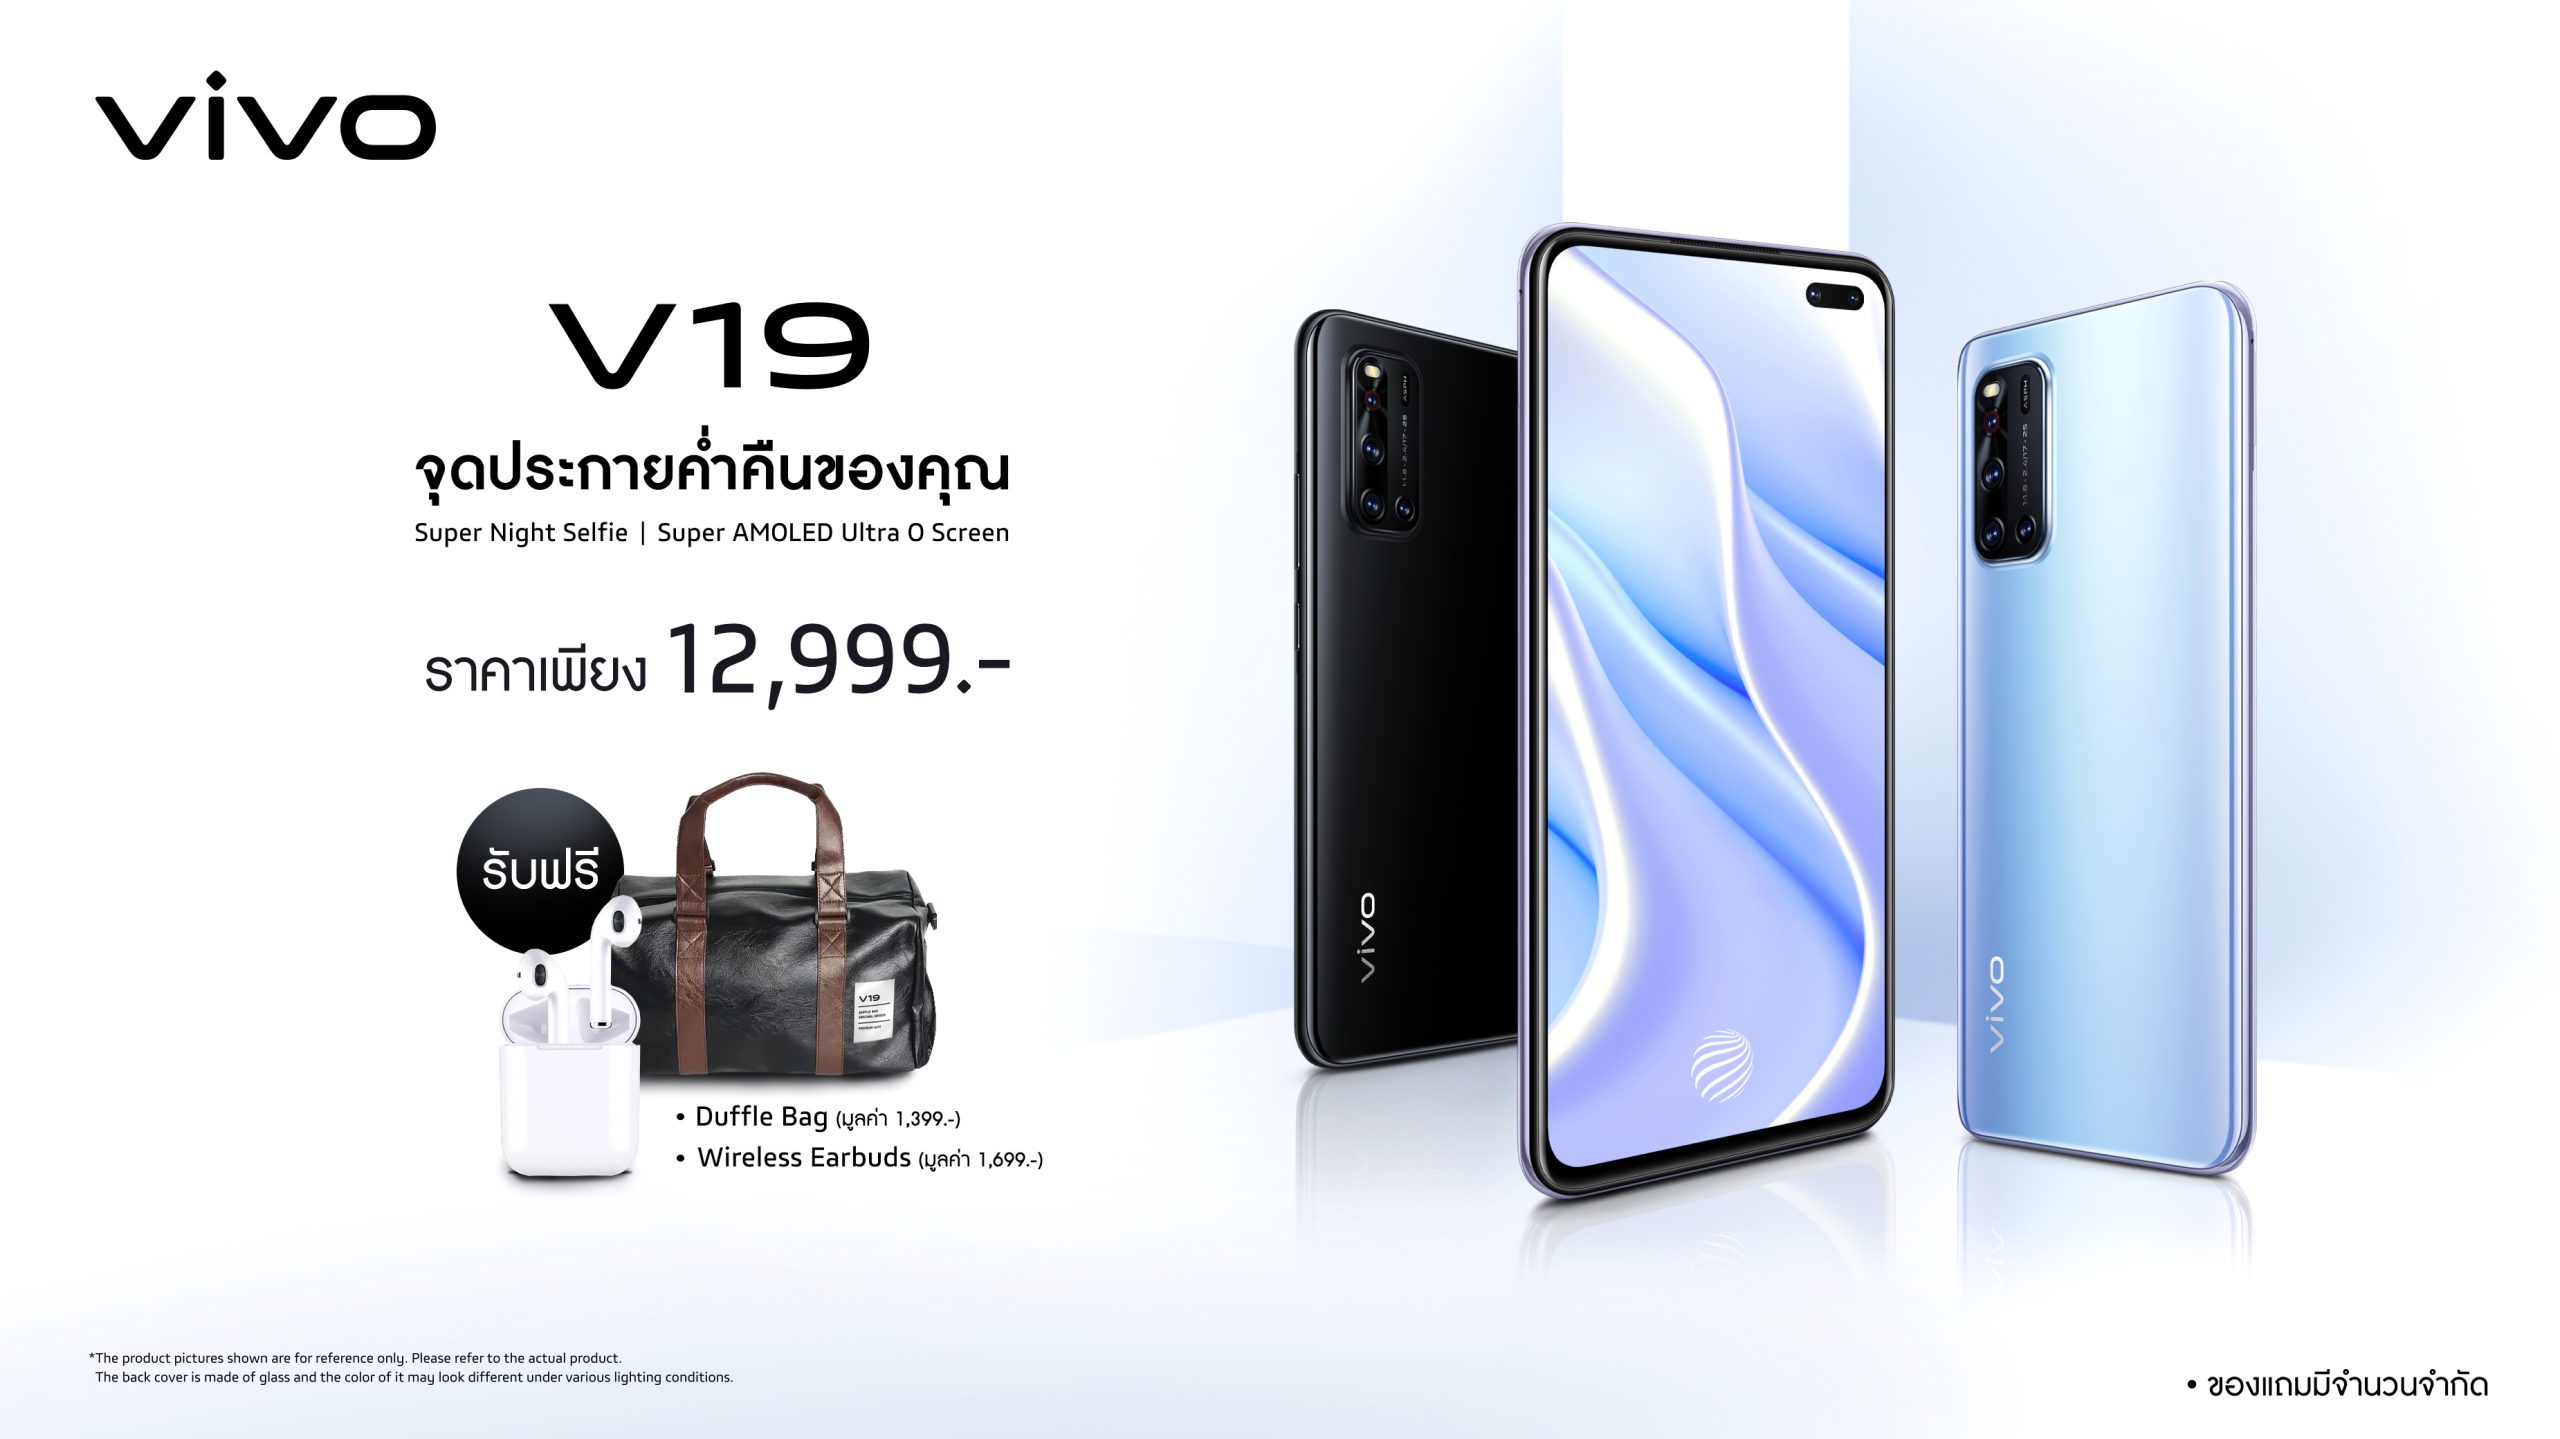 Vivo V19 First day sale 12999 baht